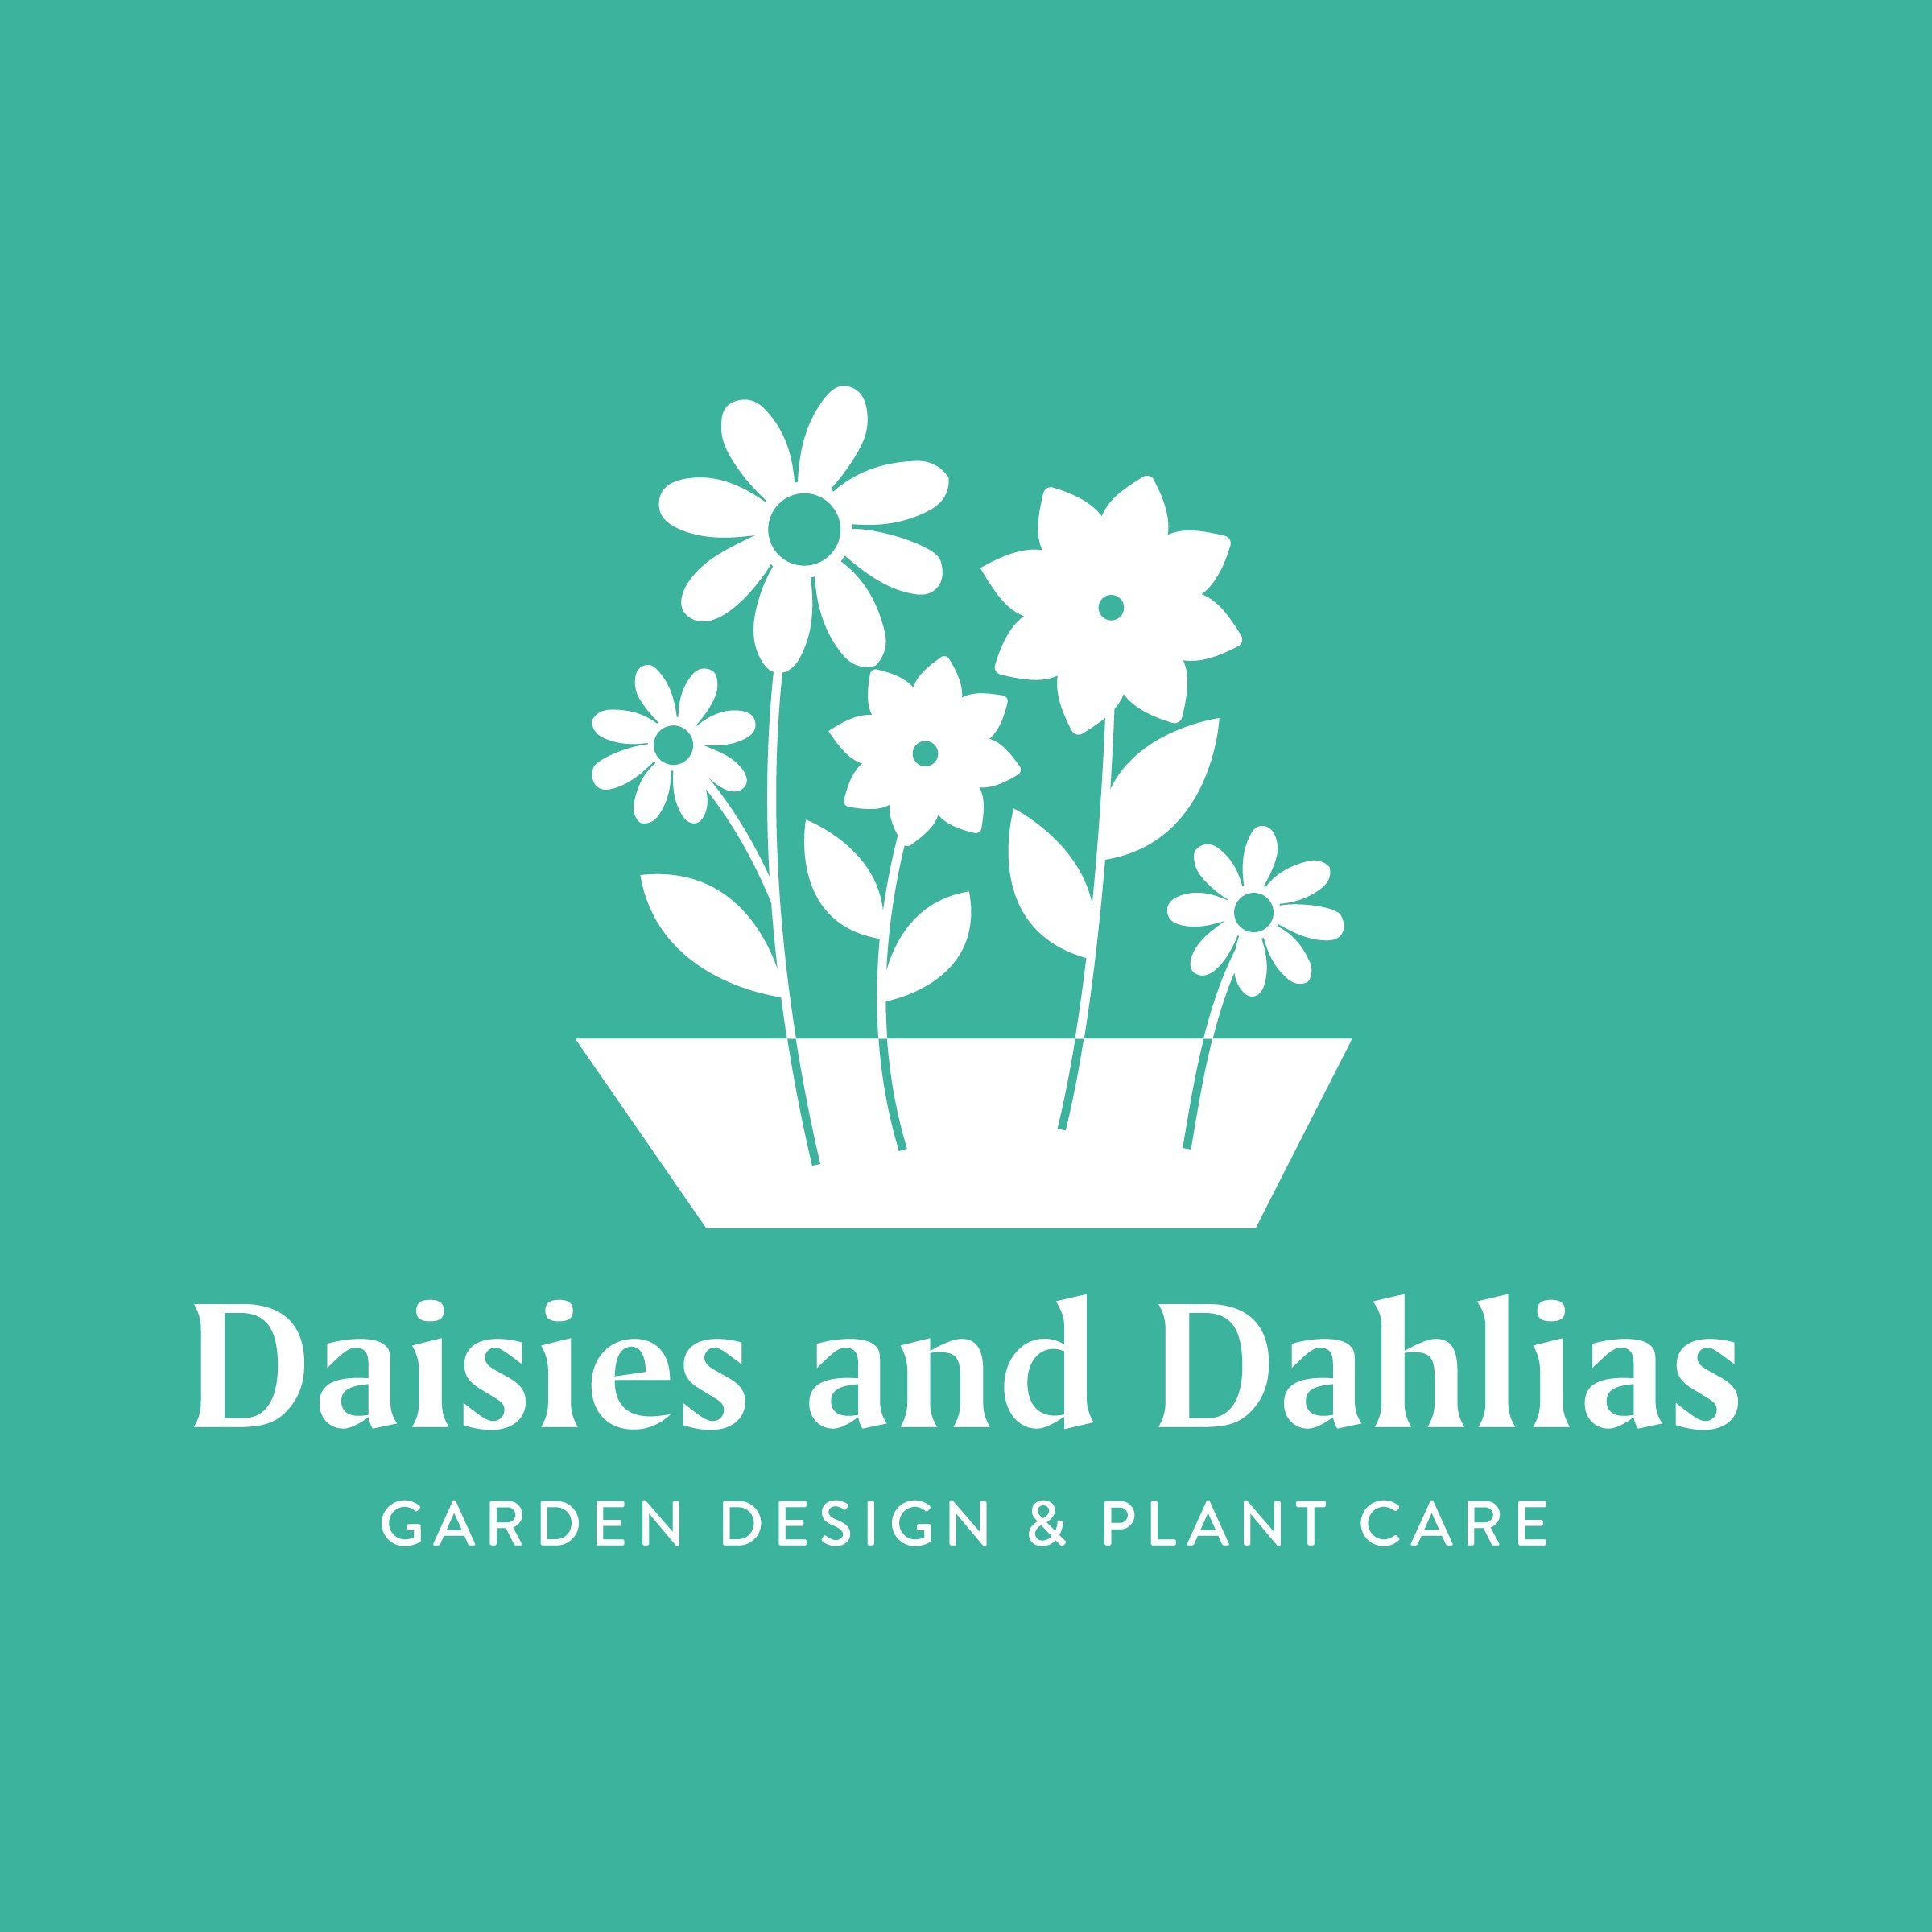 Daisies-and-Dahlias-logo-final6.jpg